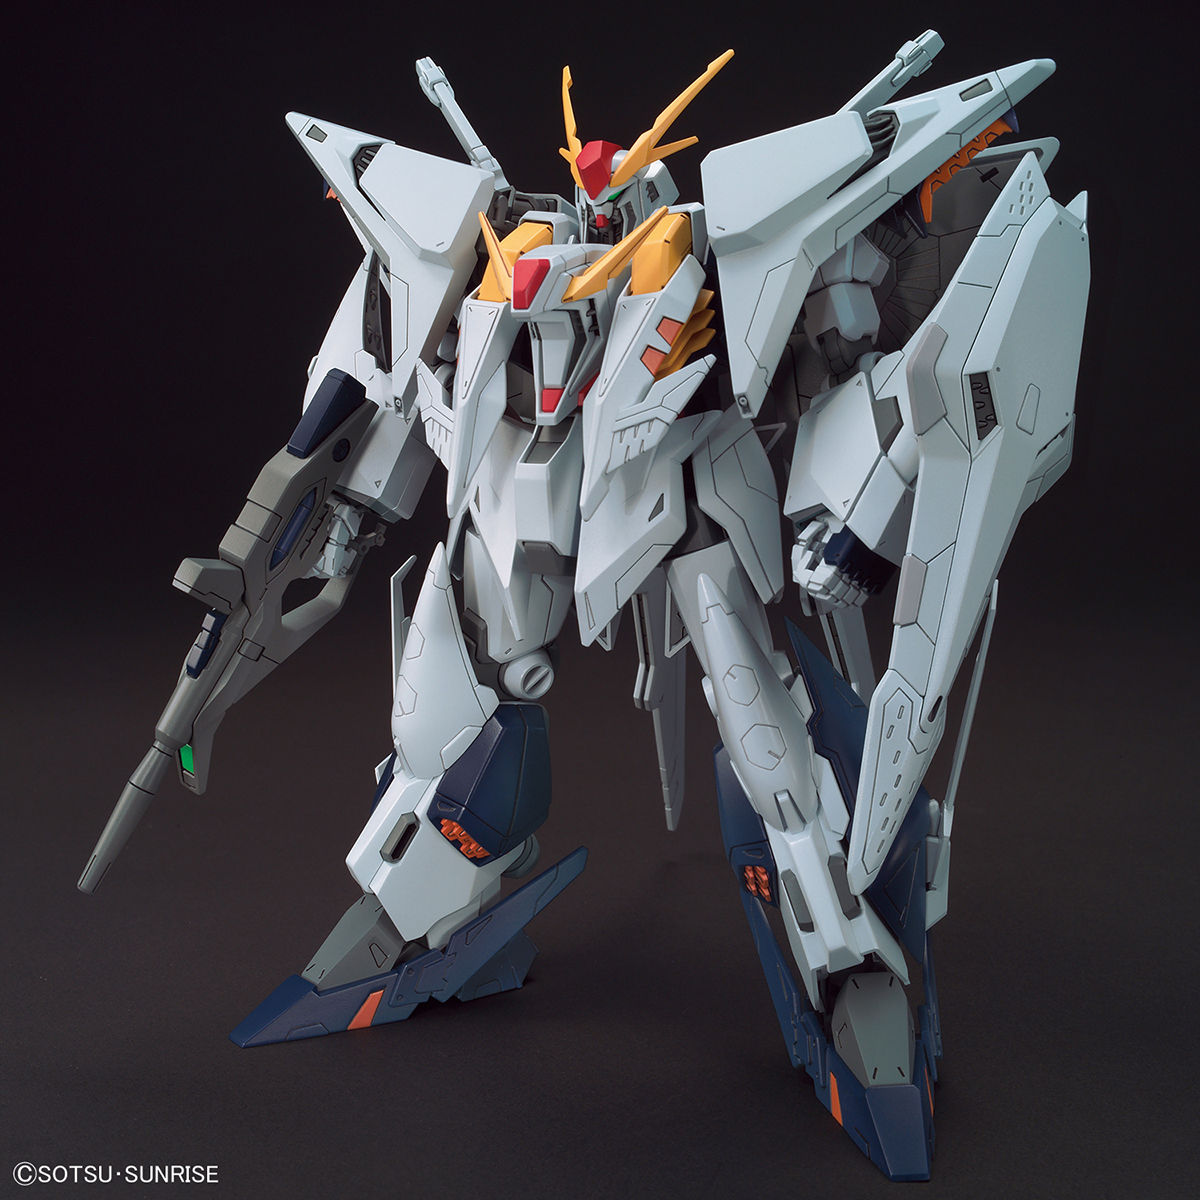 RX-105 Ξガンダム〈クスィーガンダム〉 [Ξ Gundam]（小説版）